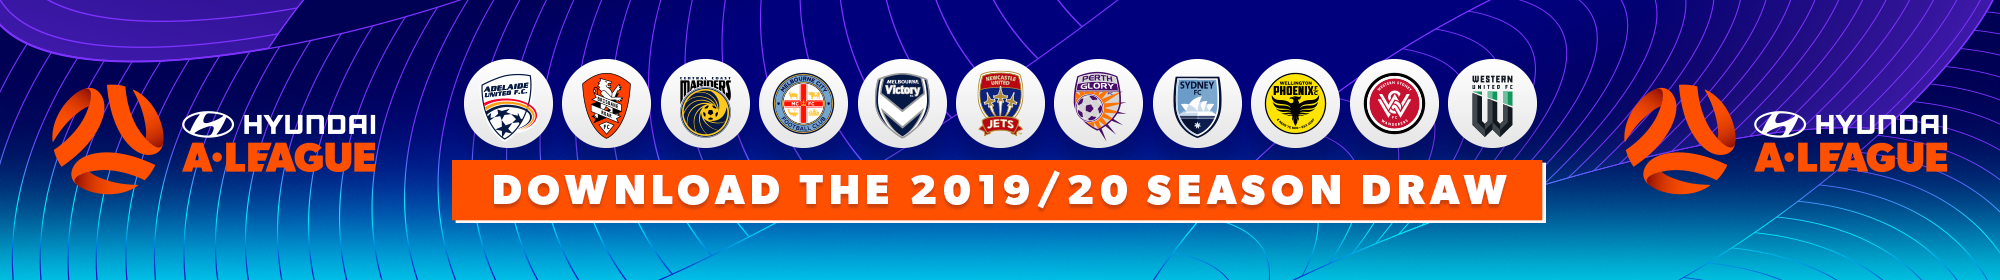 Download the Hyundai A-League 2019/20 Season Draw 